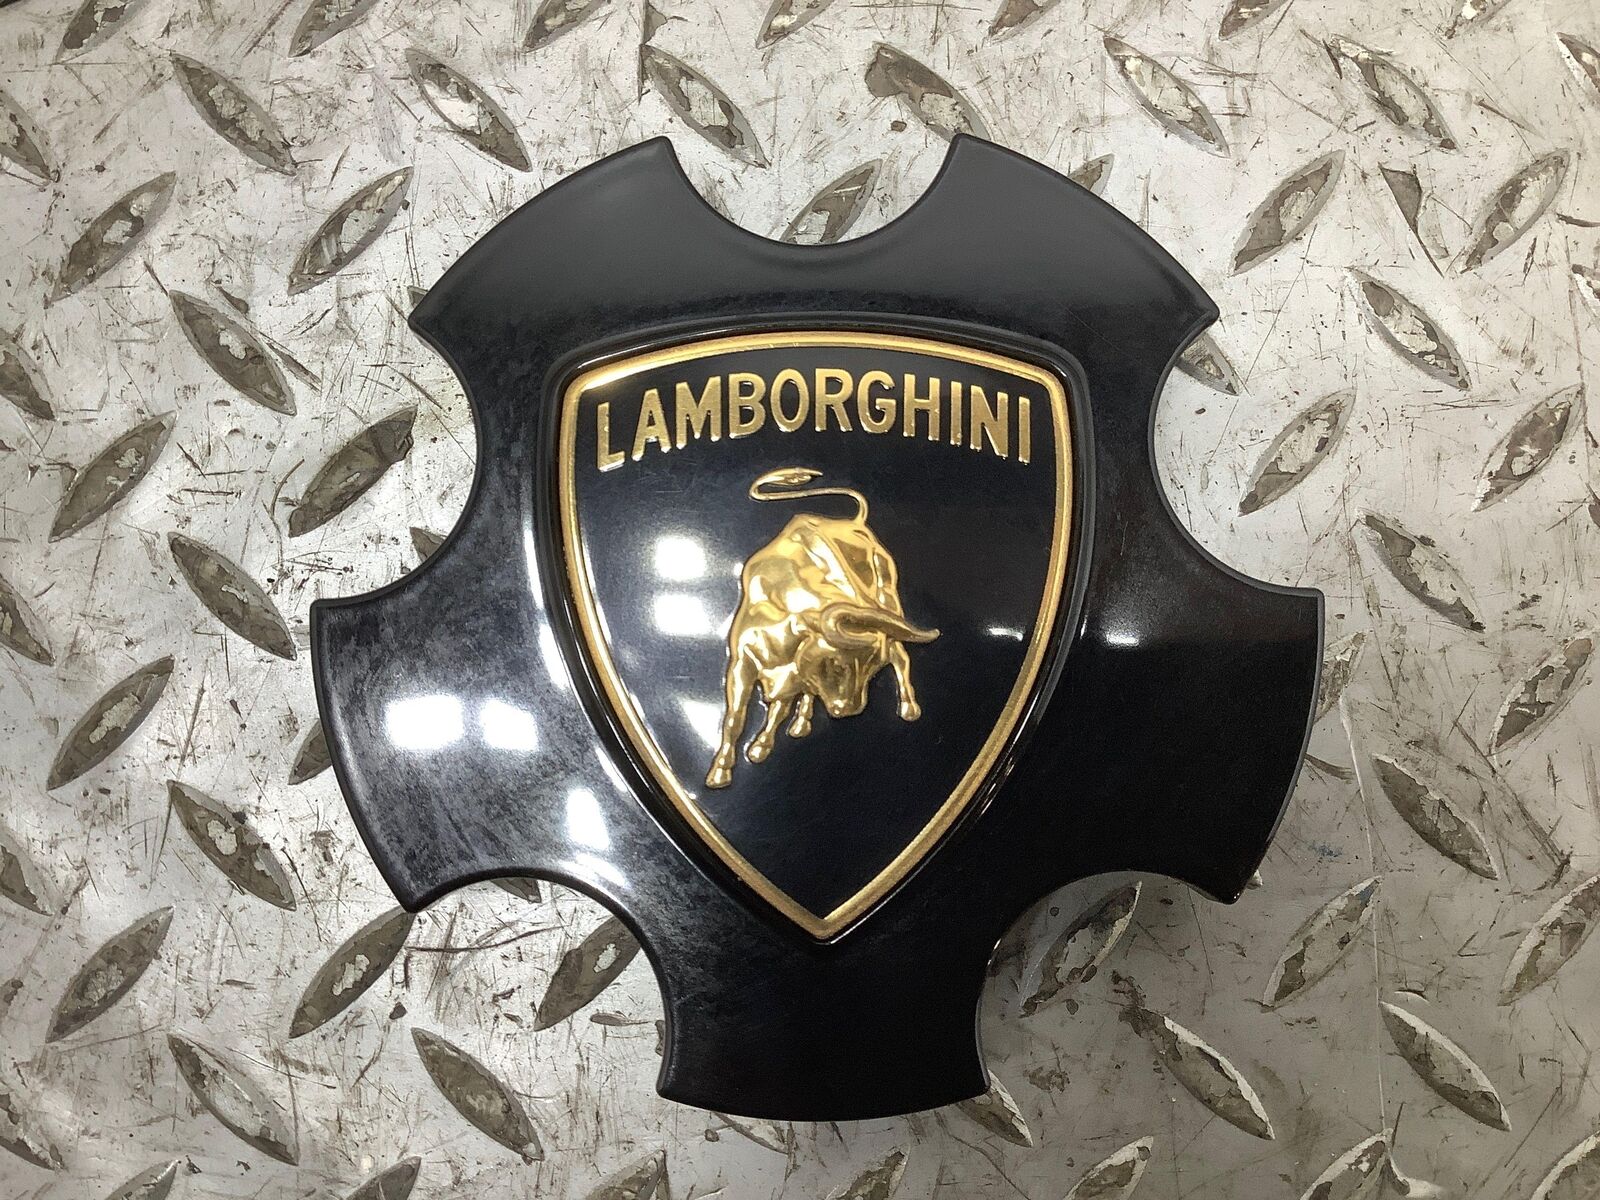 03-13 Lamborghini Gallardo Murcielago Center Cap Gloss Black OEM (400601147)